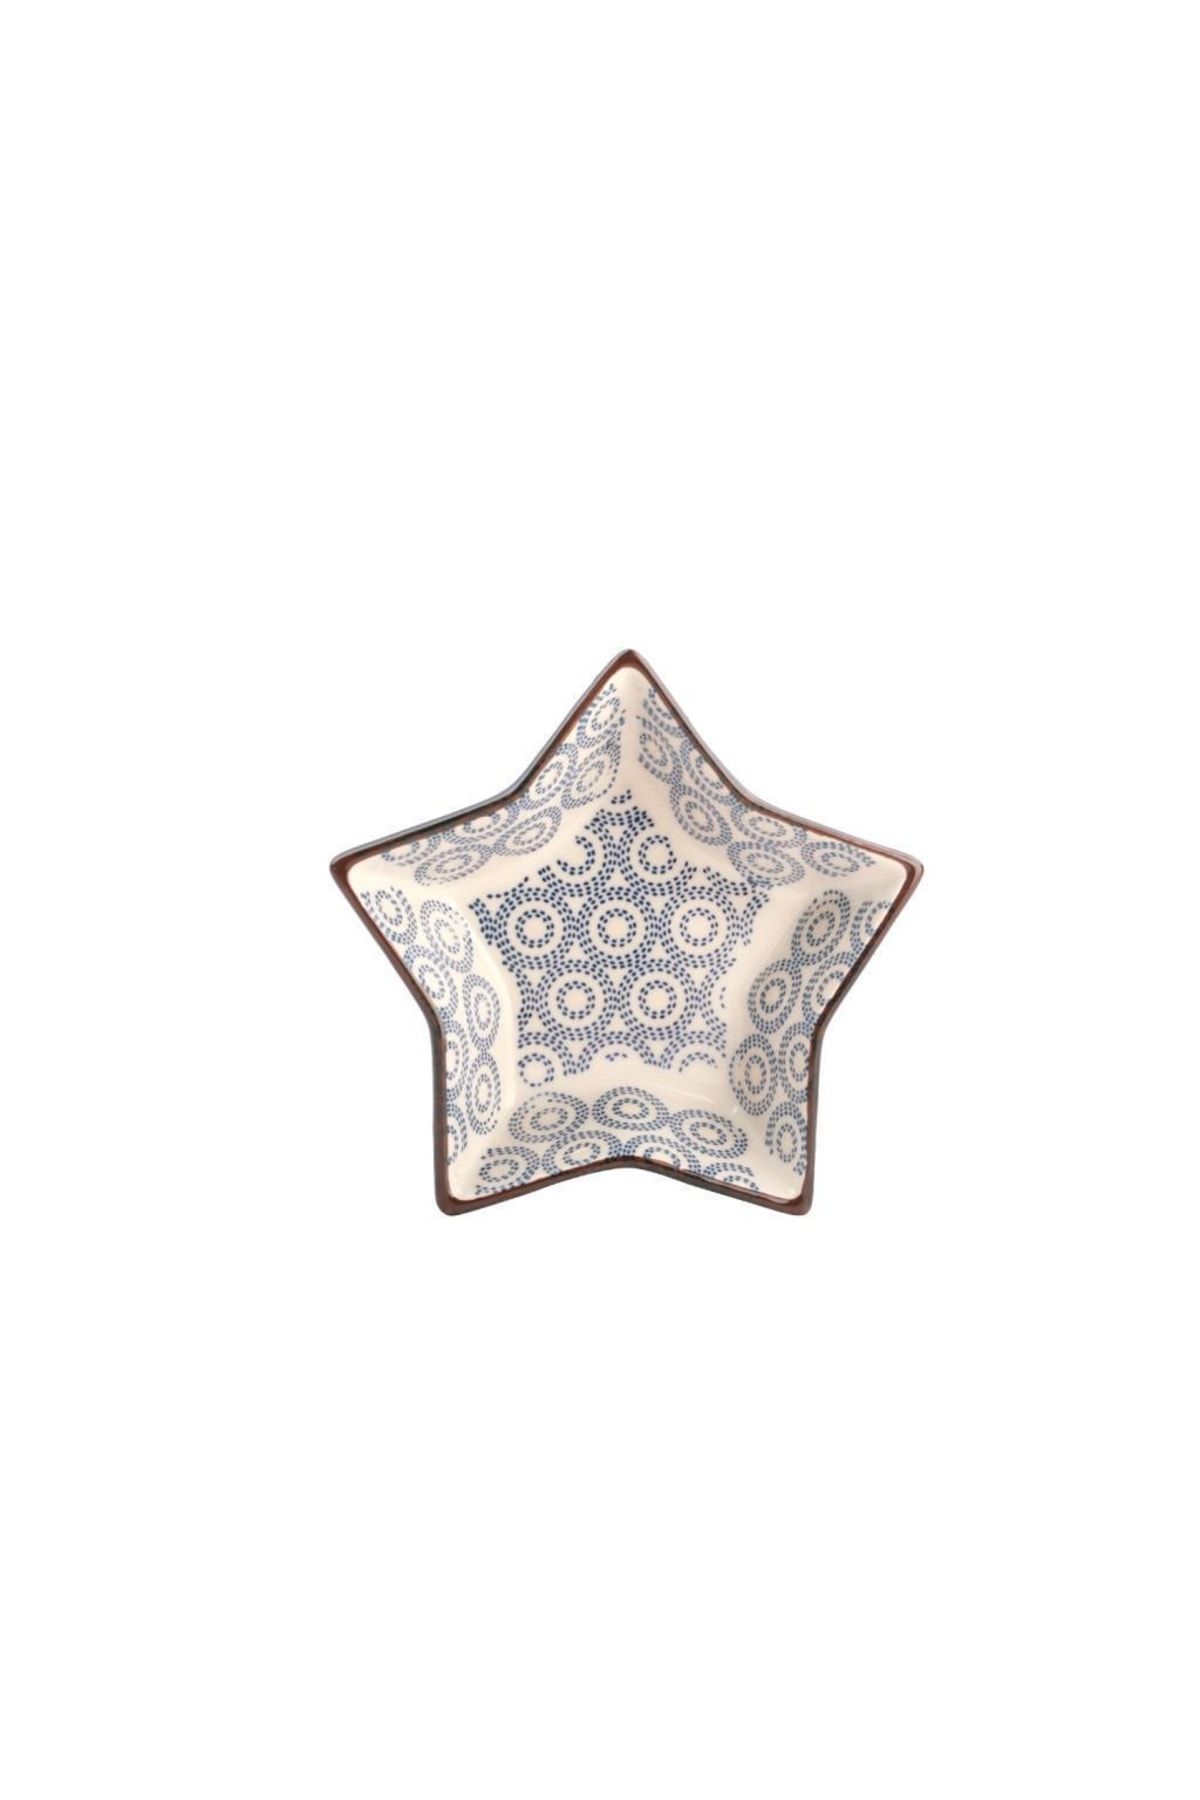 Galeri Kristal Orıent Lacivert Yıldız Kase/fırın Kabı 19cm